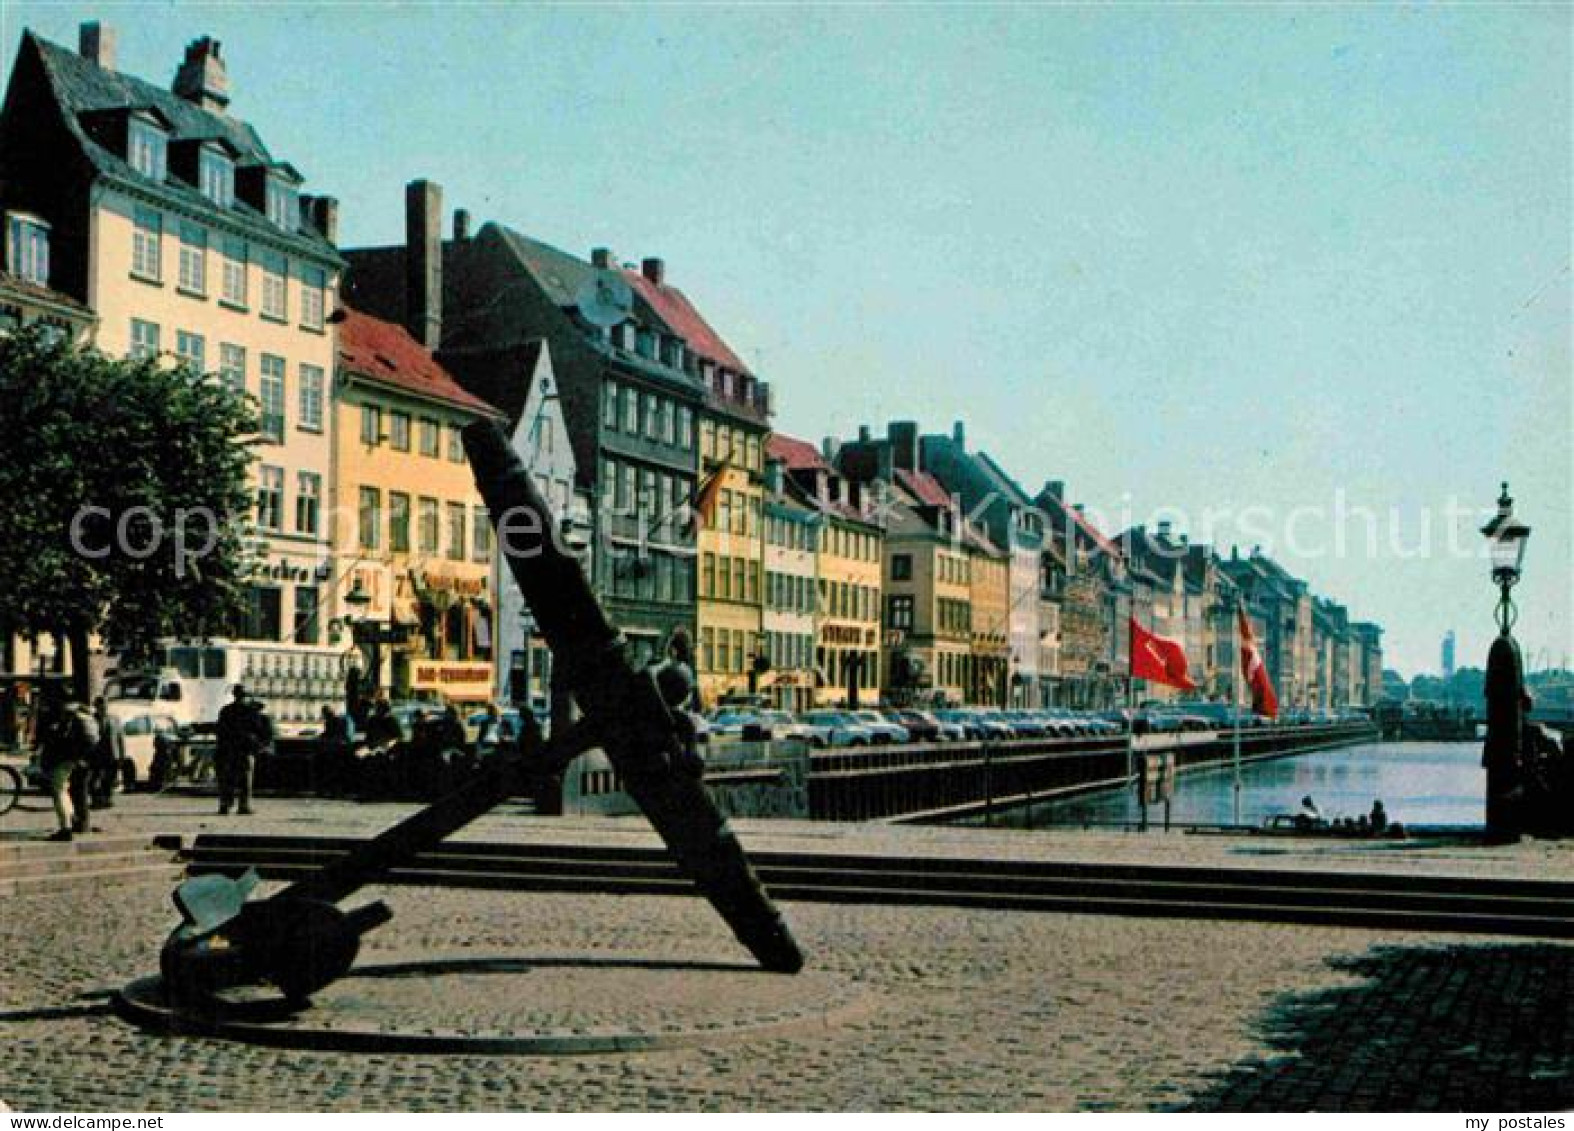 72758325 Kopenhagen Nyhavn Anker Hovedstaden - Danemark